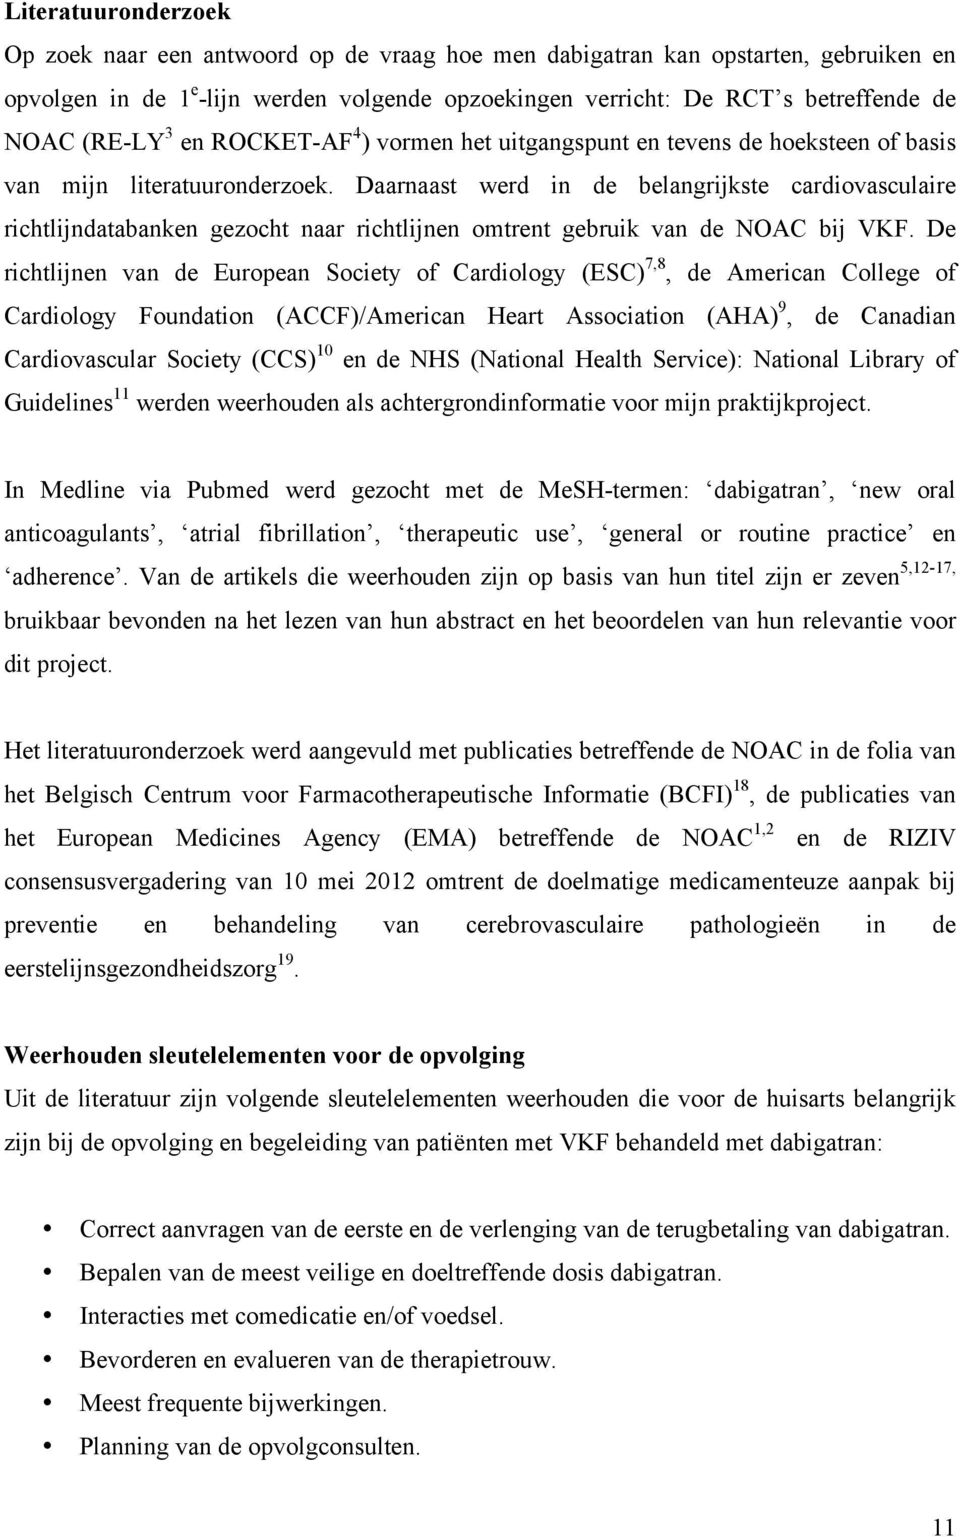 Daarnaast werd in de belangrijkste cardiovasculaire richtlijndatabanken gezocht naar richtlijnen omtrent gebruik van de NOAC bij VKF.